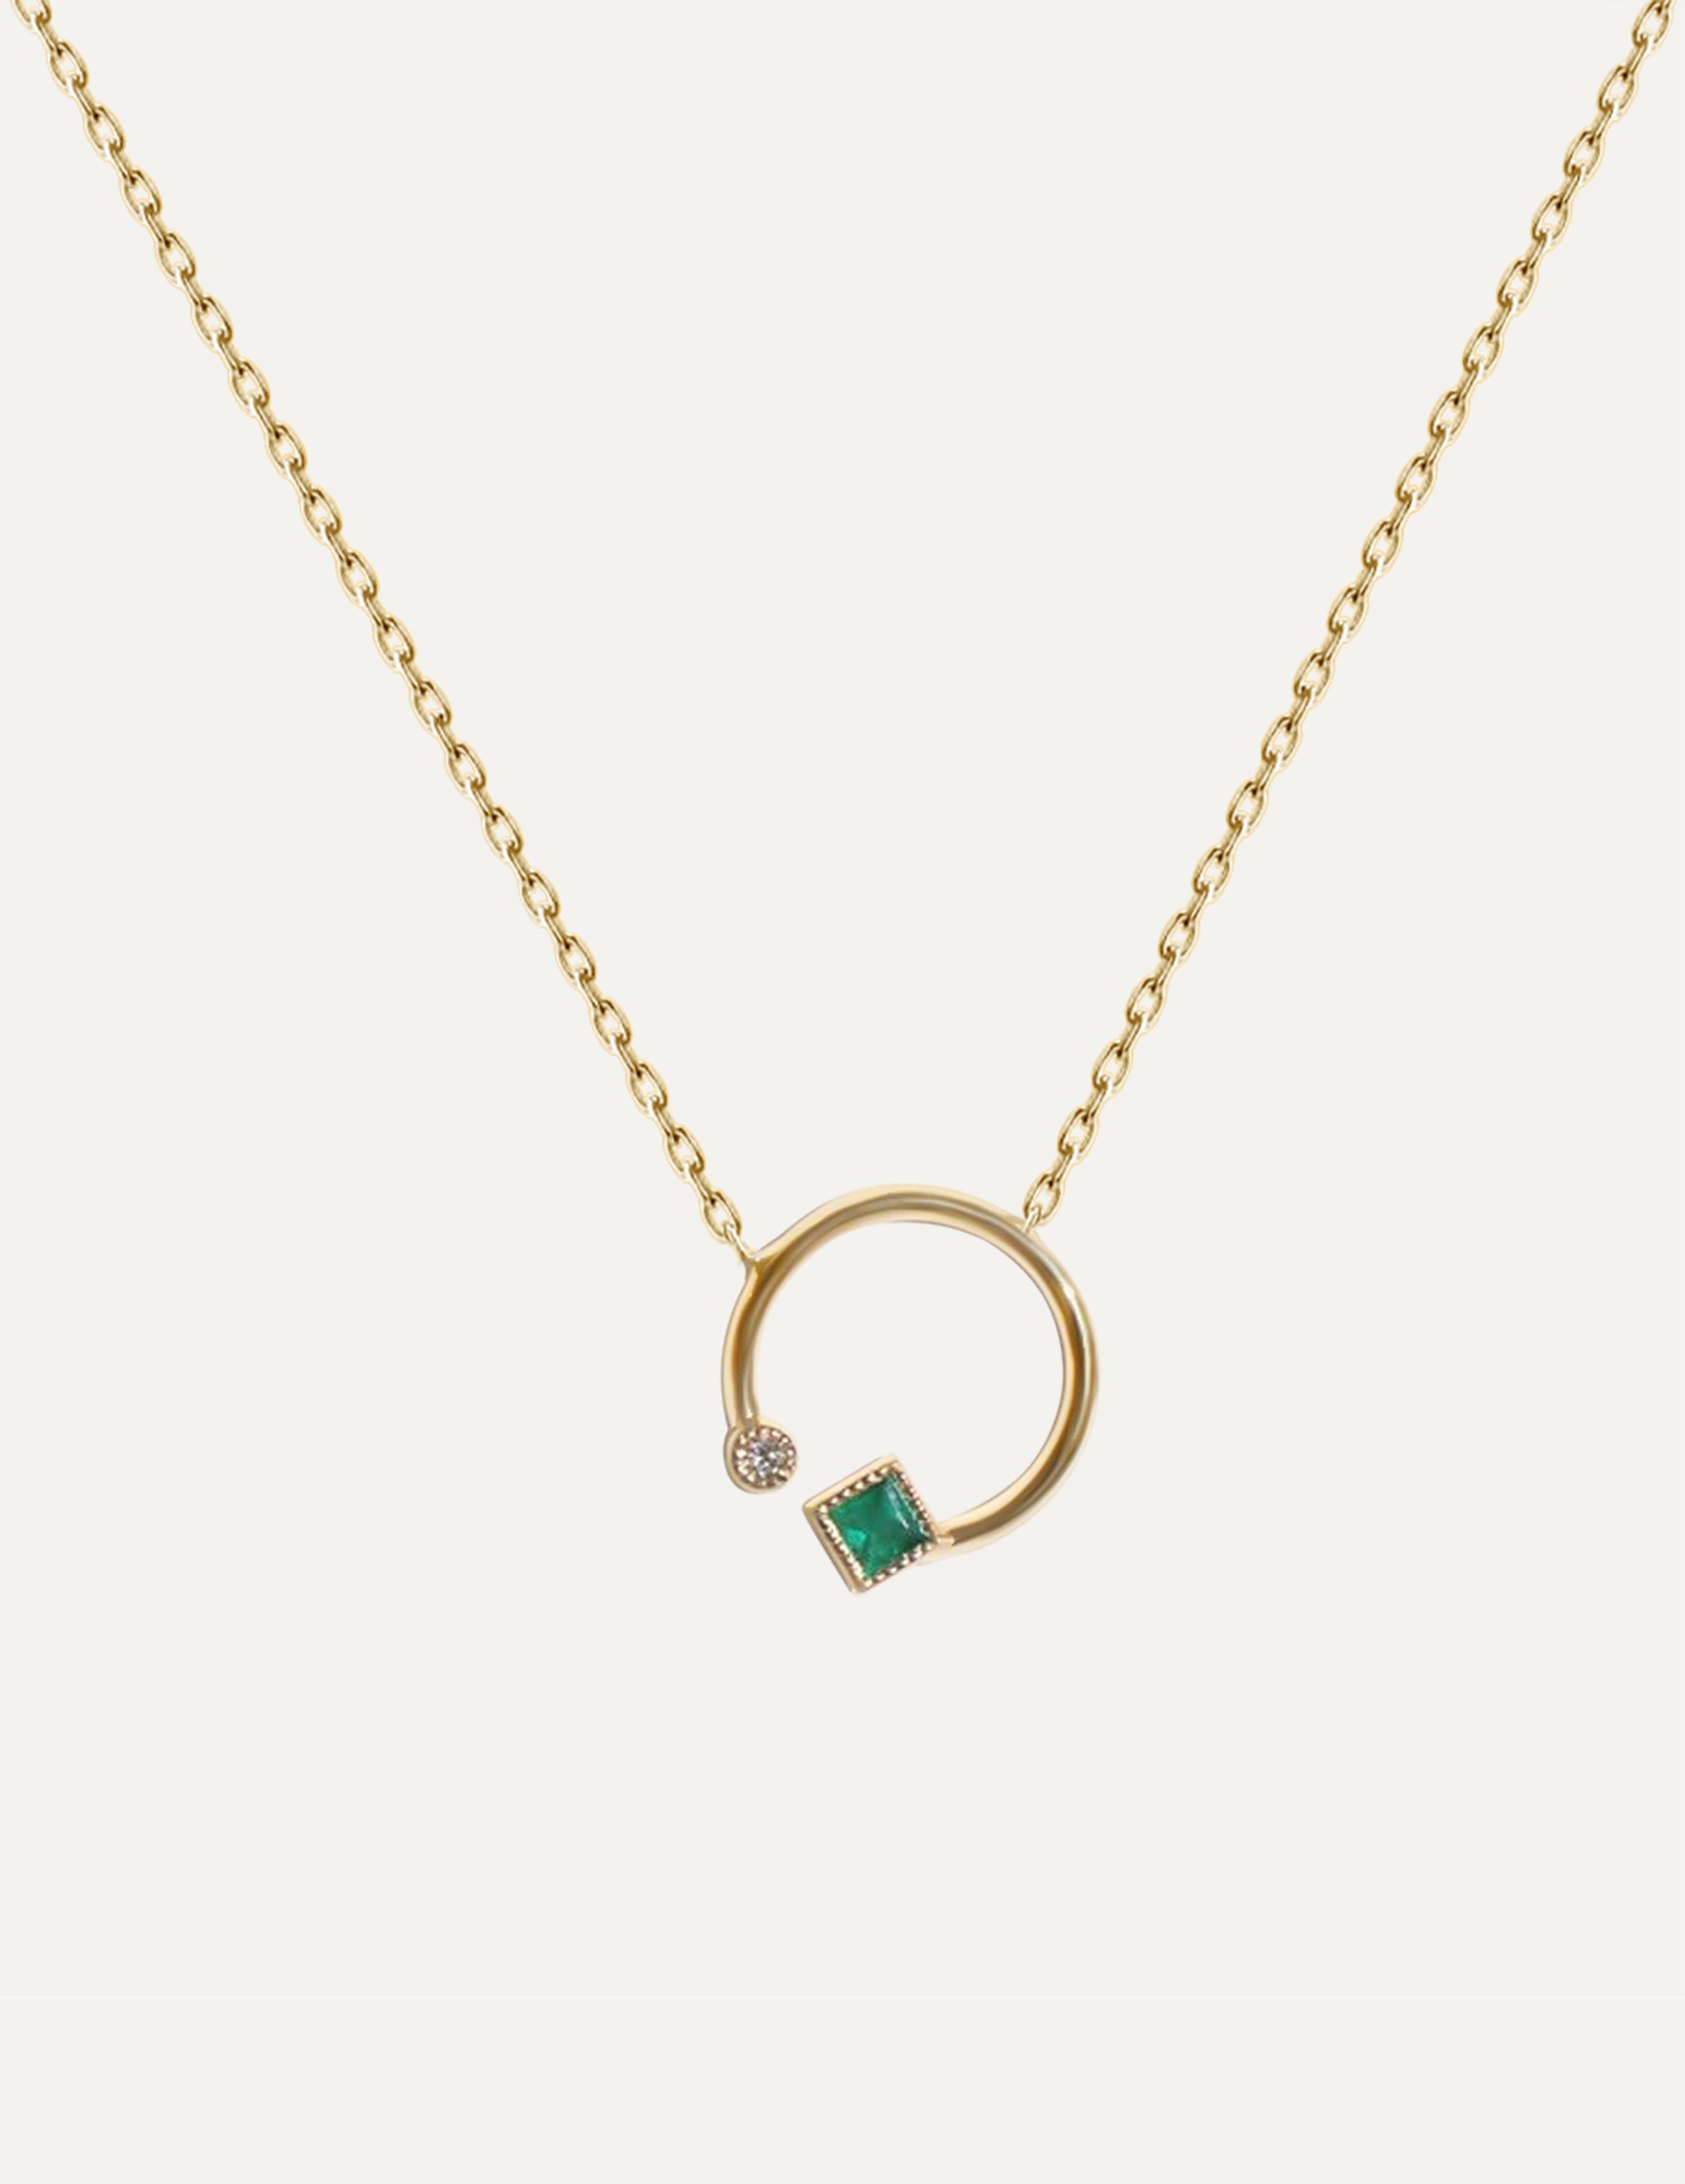 Die zierliche Smaragd-Halskette ist ein bemerkenswertes und auffälliges Schmuckstück, das die Anziehungskraft der grünen Schönheit der Natur verkörpert. Diese Halskette zeichnet sich durch ein Design aus, das einen offenen Raum innerhalb des